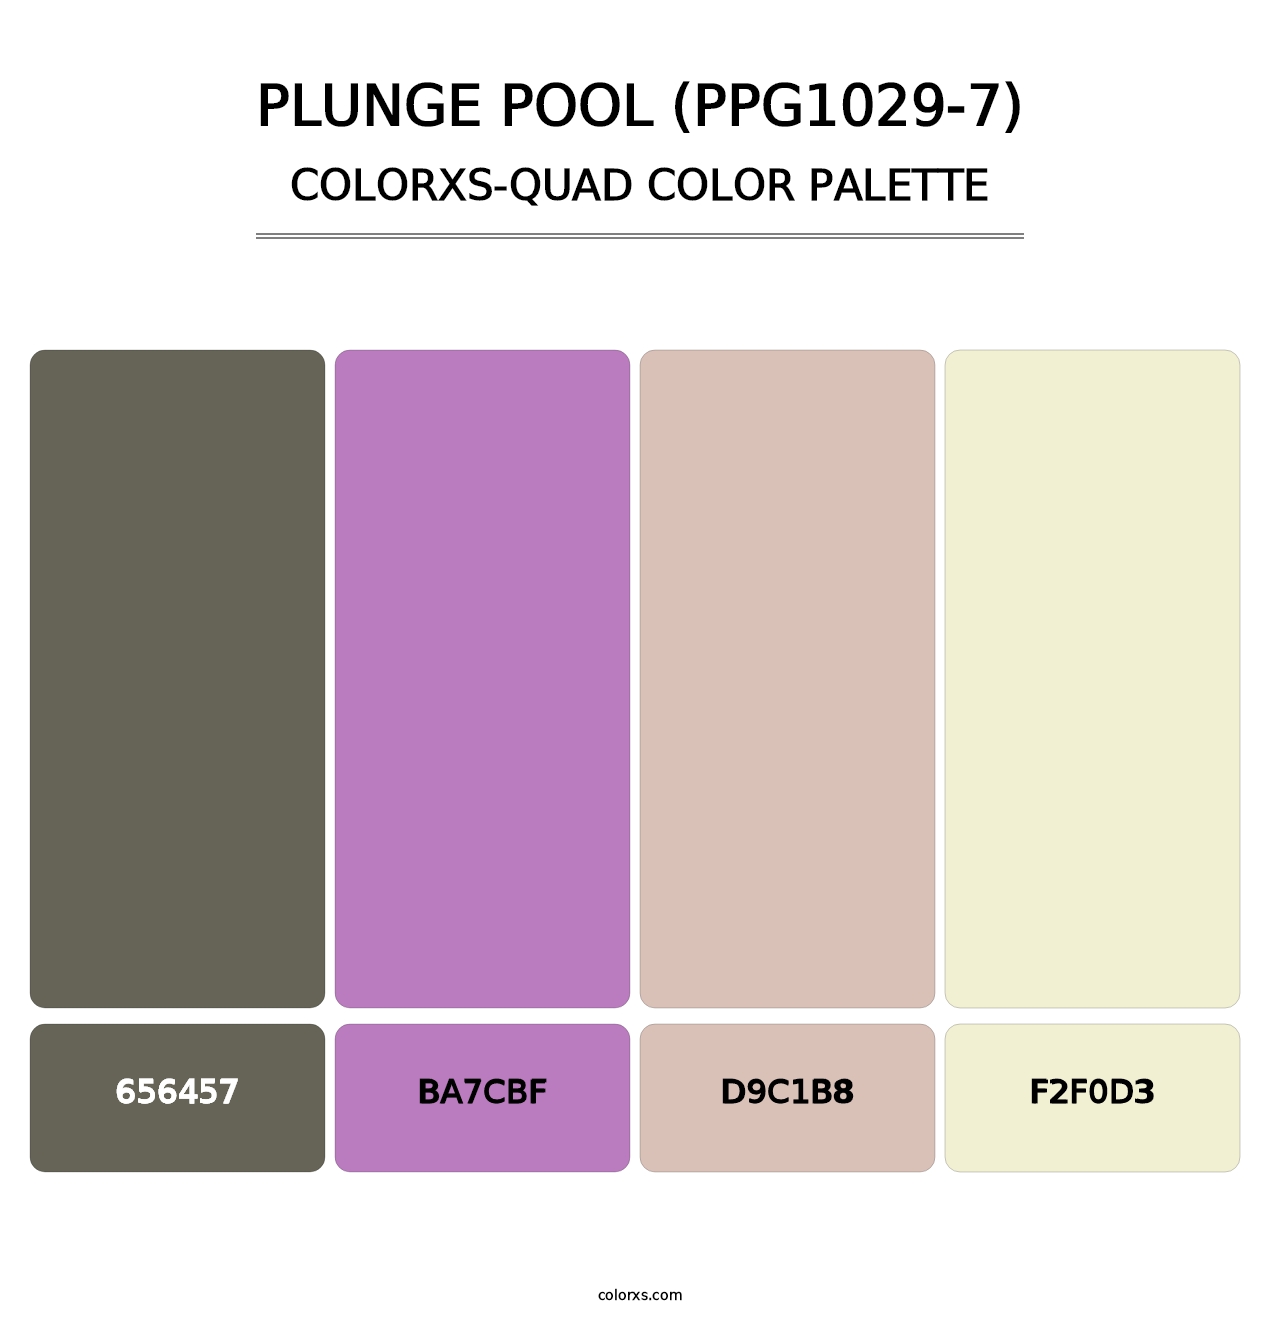 Plunge Pool (PPG1029-7) - Colorxs Quad Palette